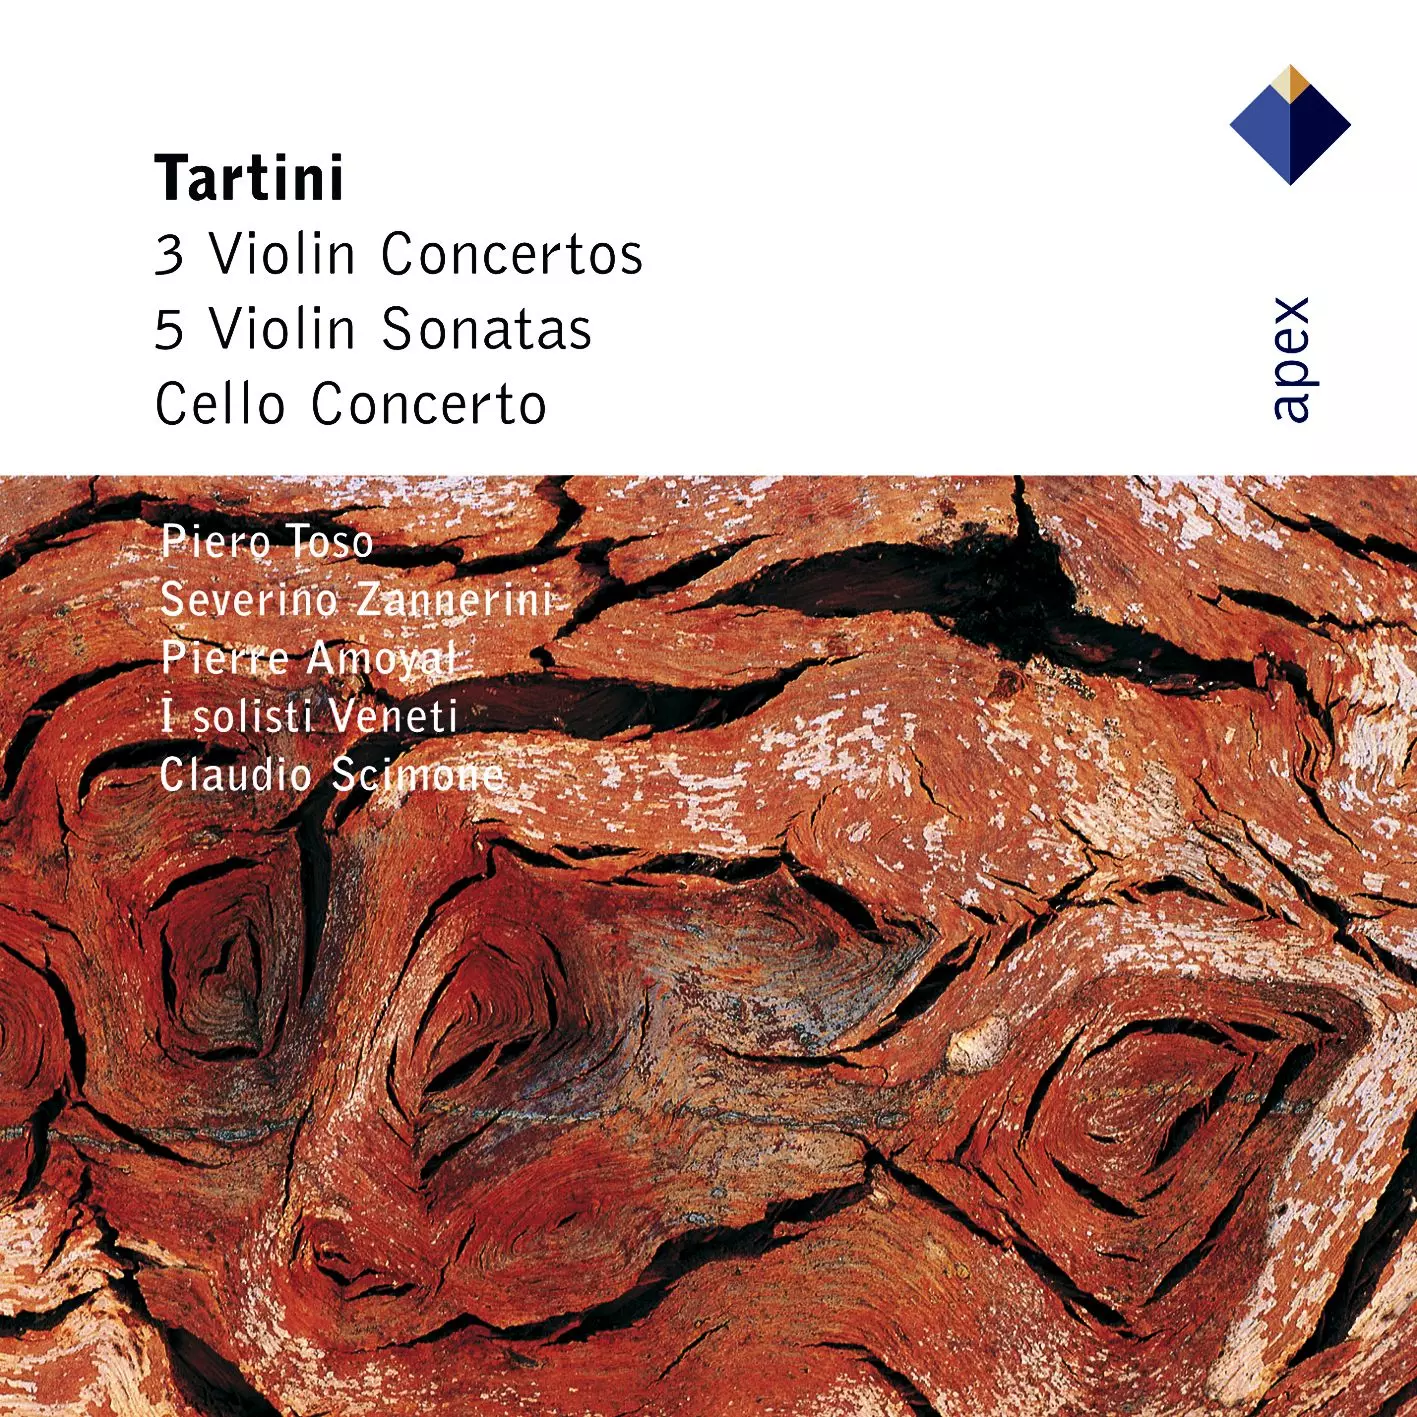 Tartini: Violin Concertos, Violin Sonatas & Cello Concerto